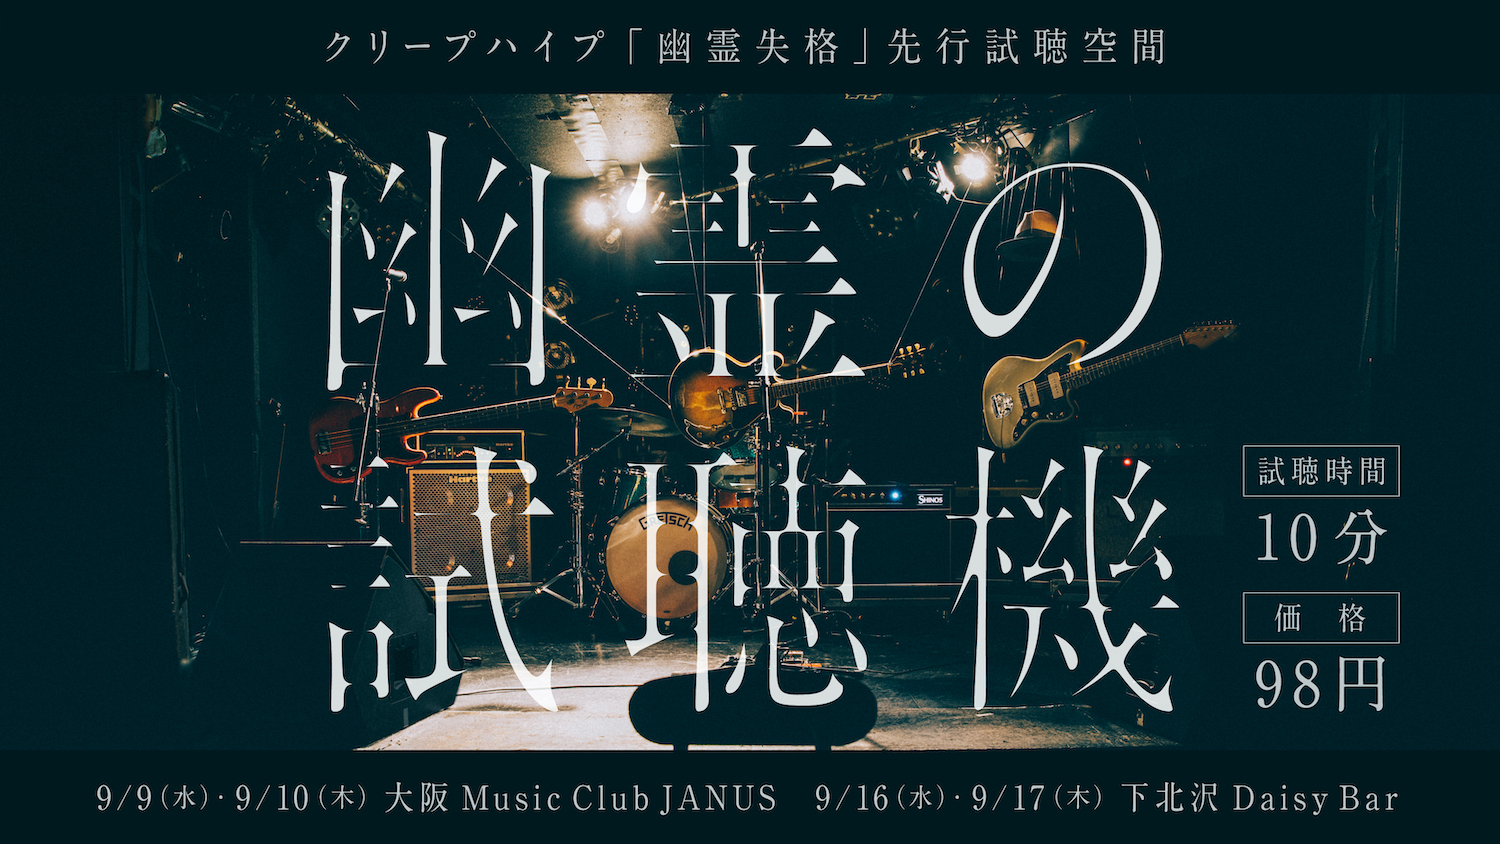 9 18 金 新曲 幽霊失格 配信開始 幽霊が新曲を演奏する無演者ライブ 幽霊の試聴機 を東京 大阪で開催 クリープハイプ オフィシャルサイト